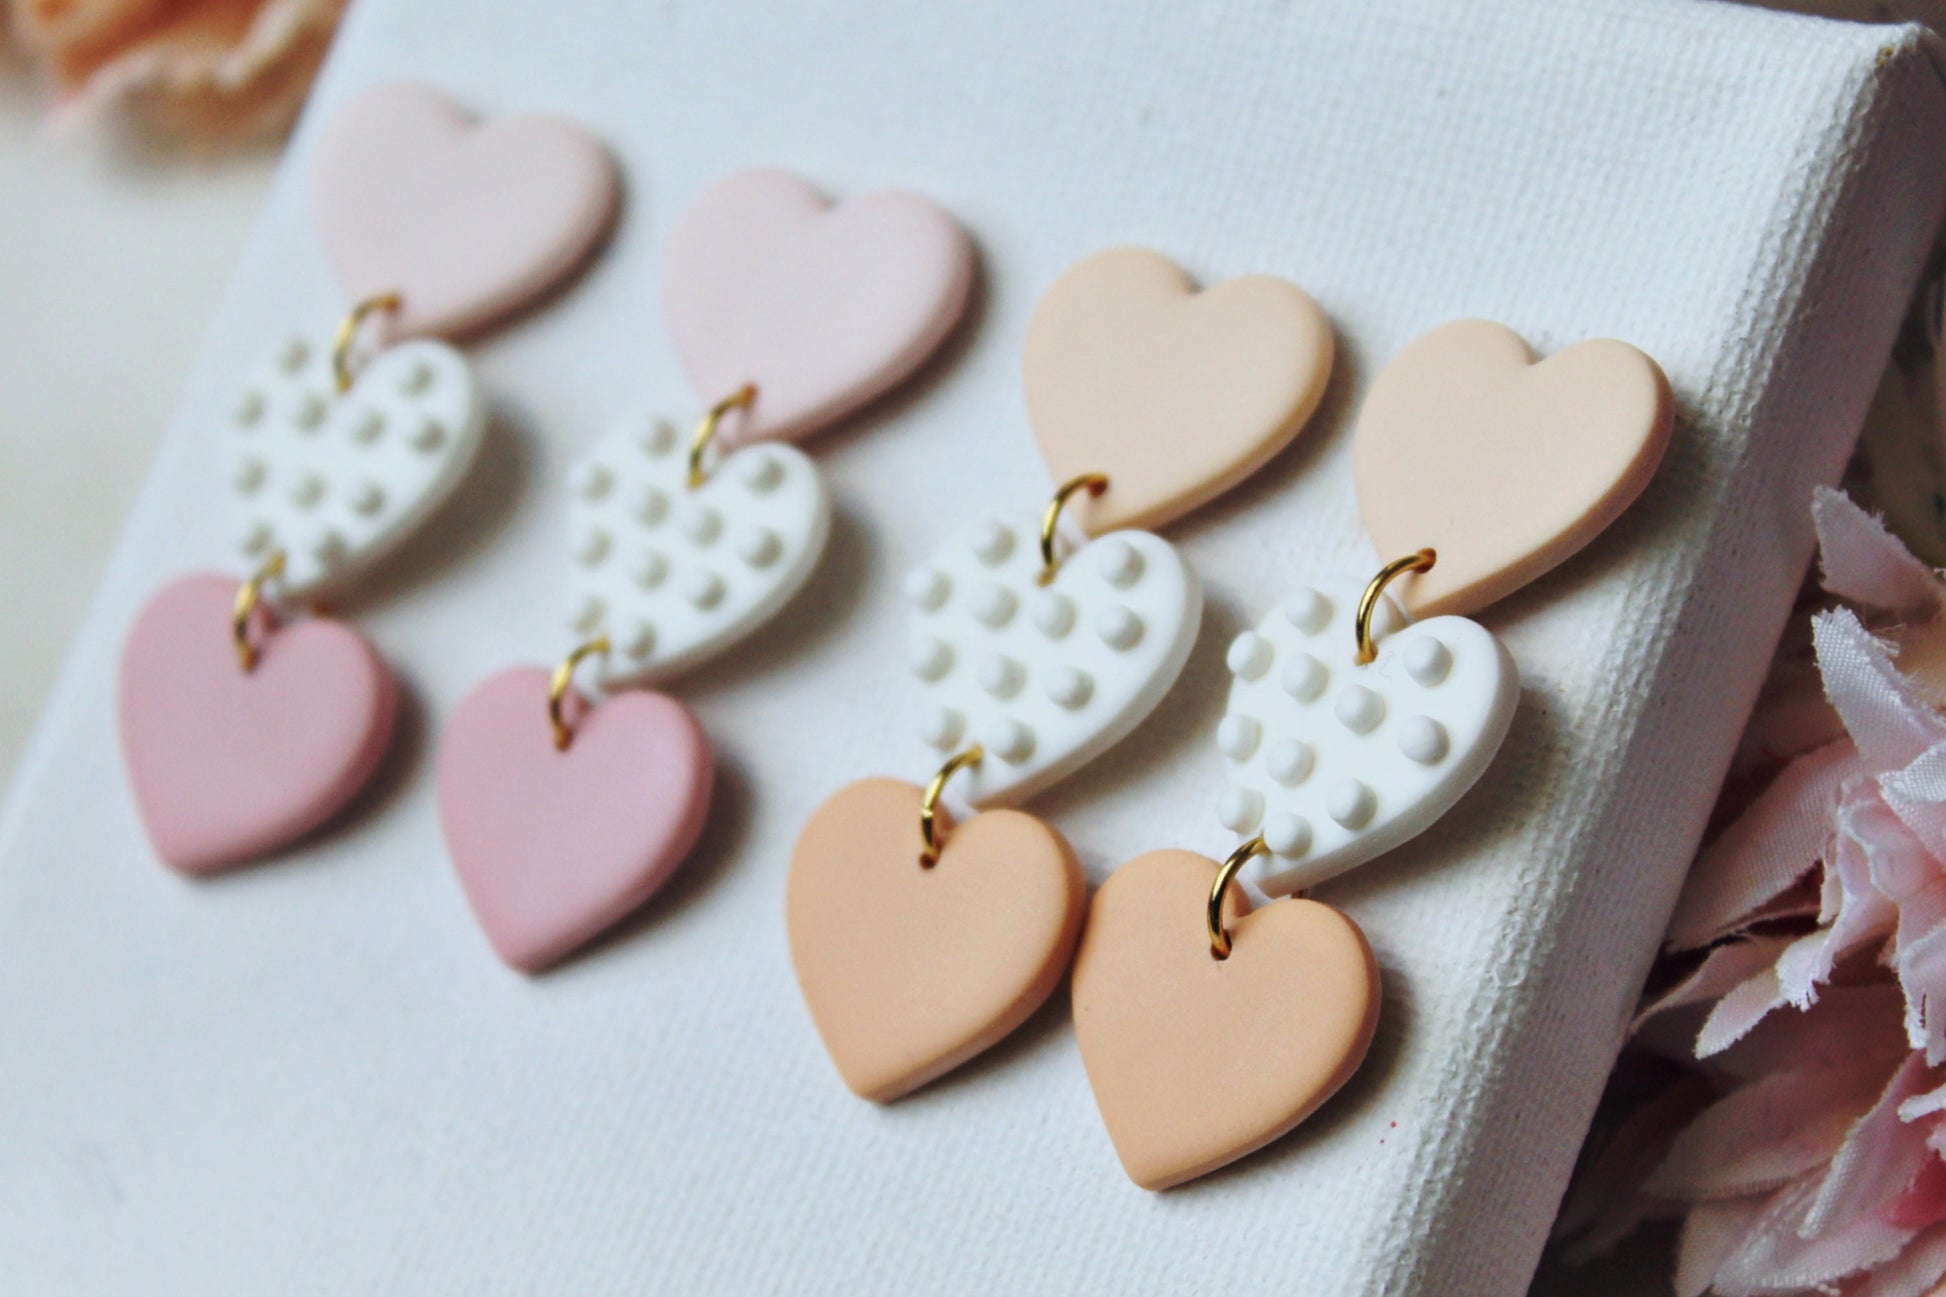 Valentine's Day Earrings, Heart Earrings, Polymer Clay Earrings, Dangle Earrings, Clay Earrings, Cute Earrings, Pink, Handmade Jewelry, Gift